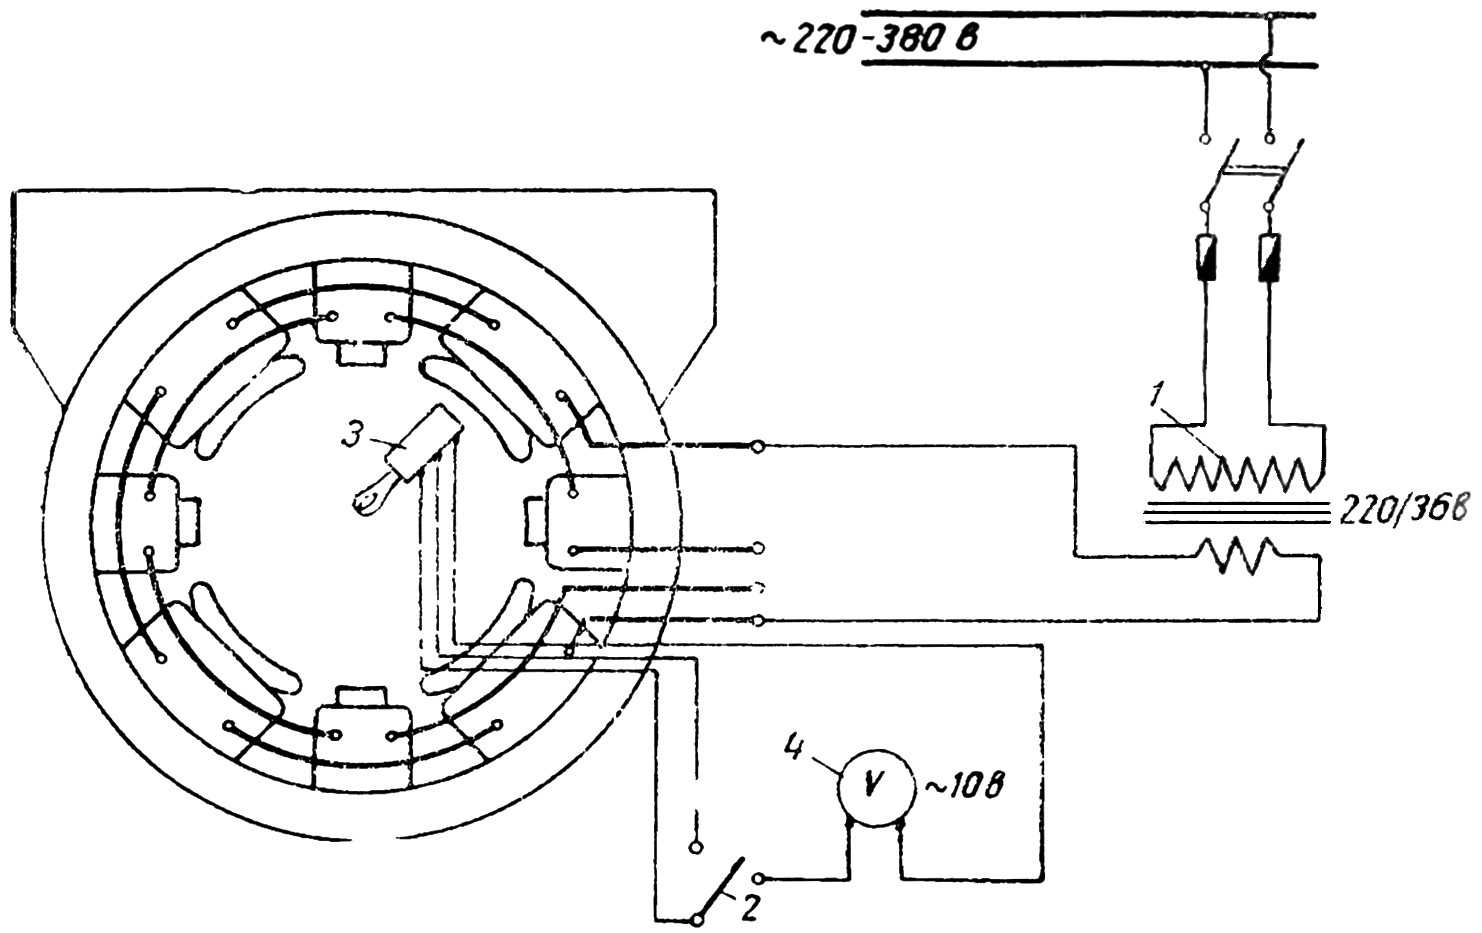 Схема испытания межвиткового замыкания магнитных катушек в остове двигателя трамвая методом С. В. Великанова